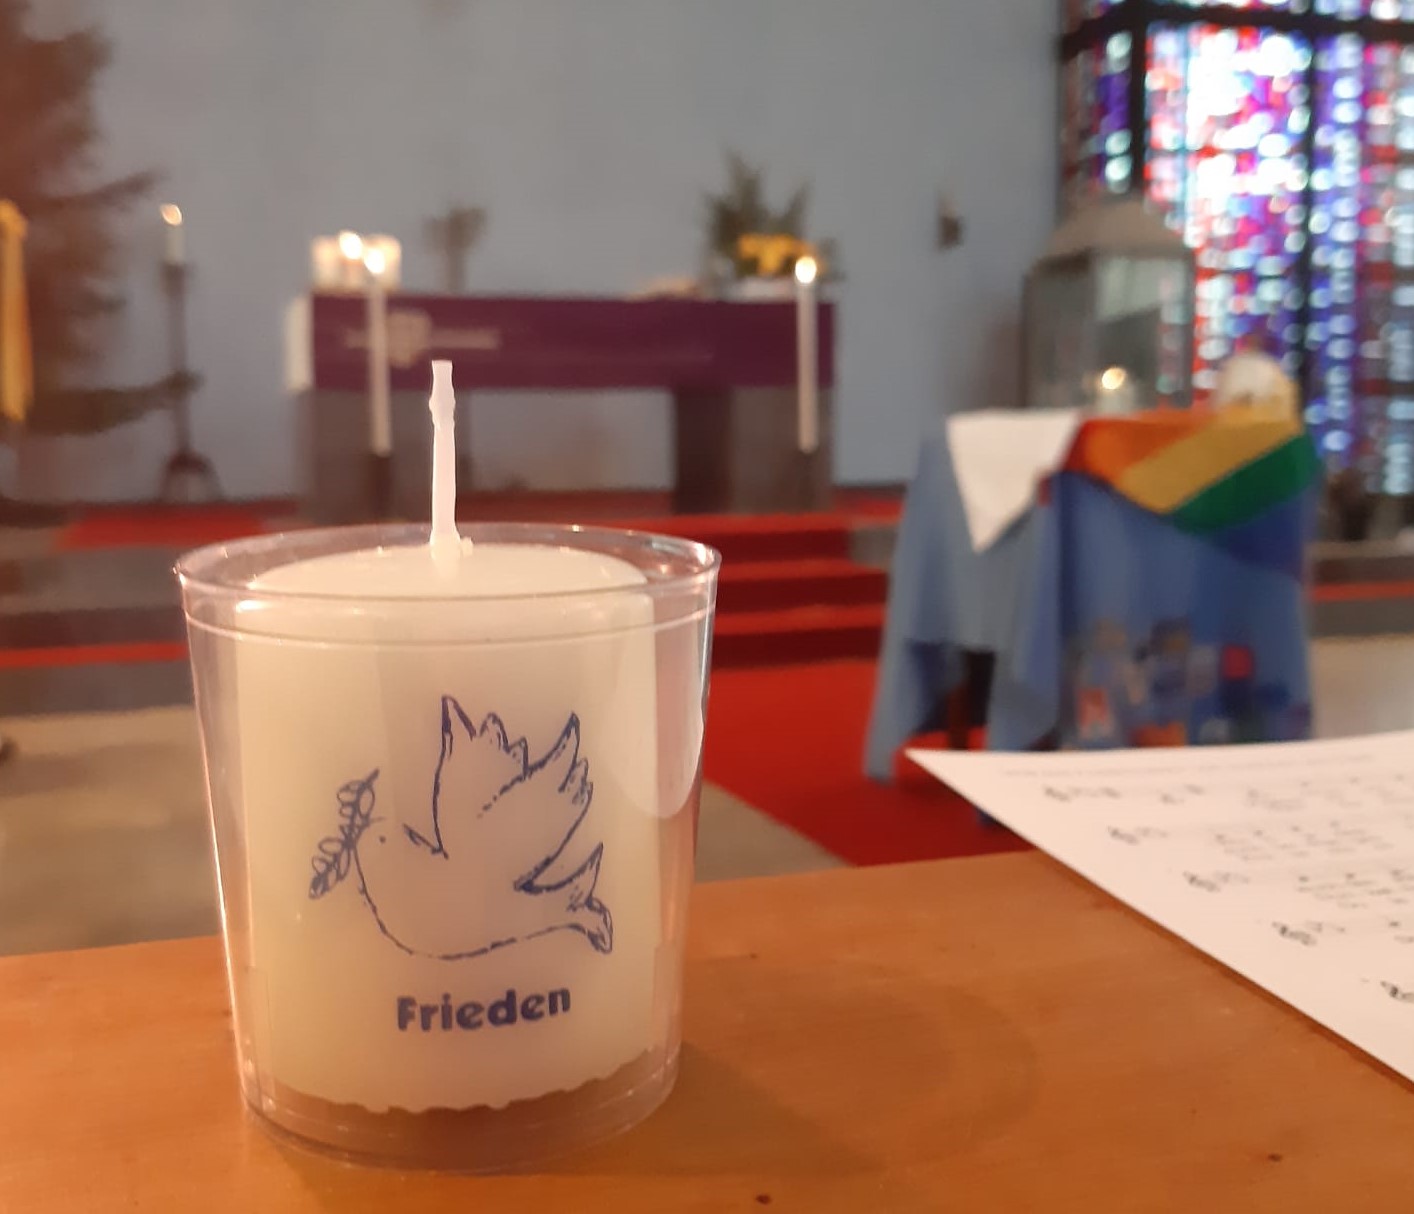 Friedenslicht 2022 in unserer Kirche (c) Pia Holzheuser